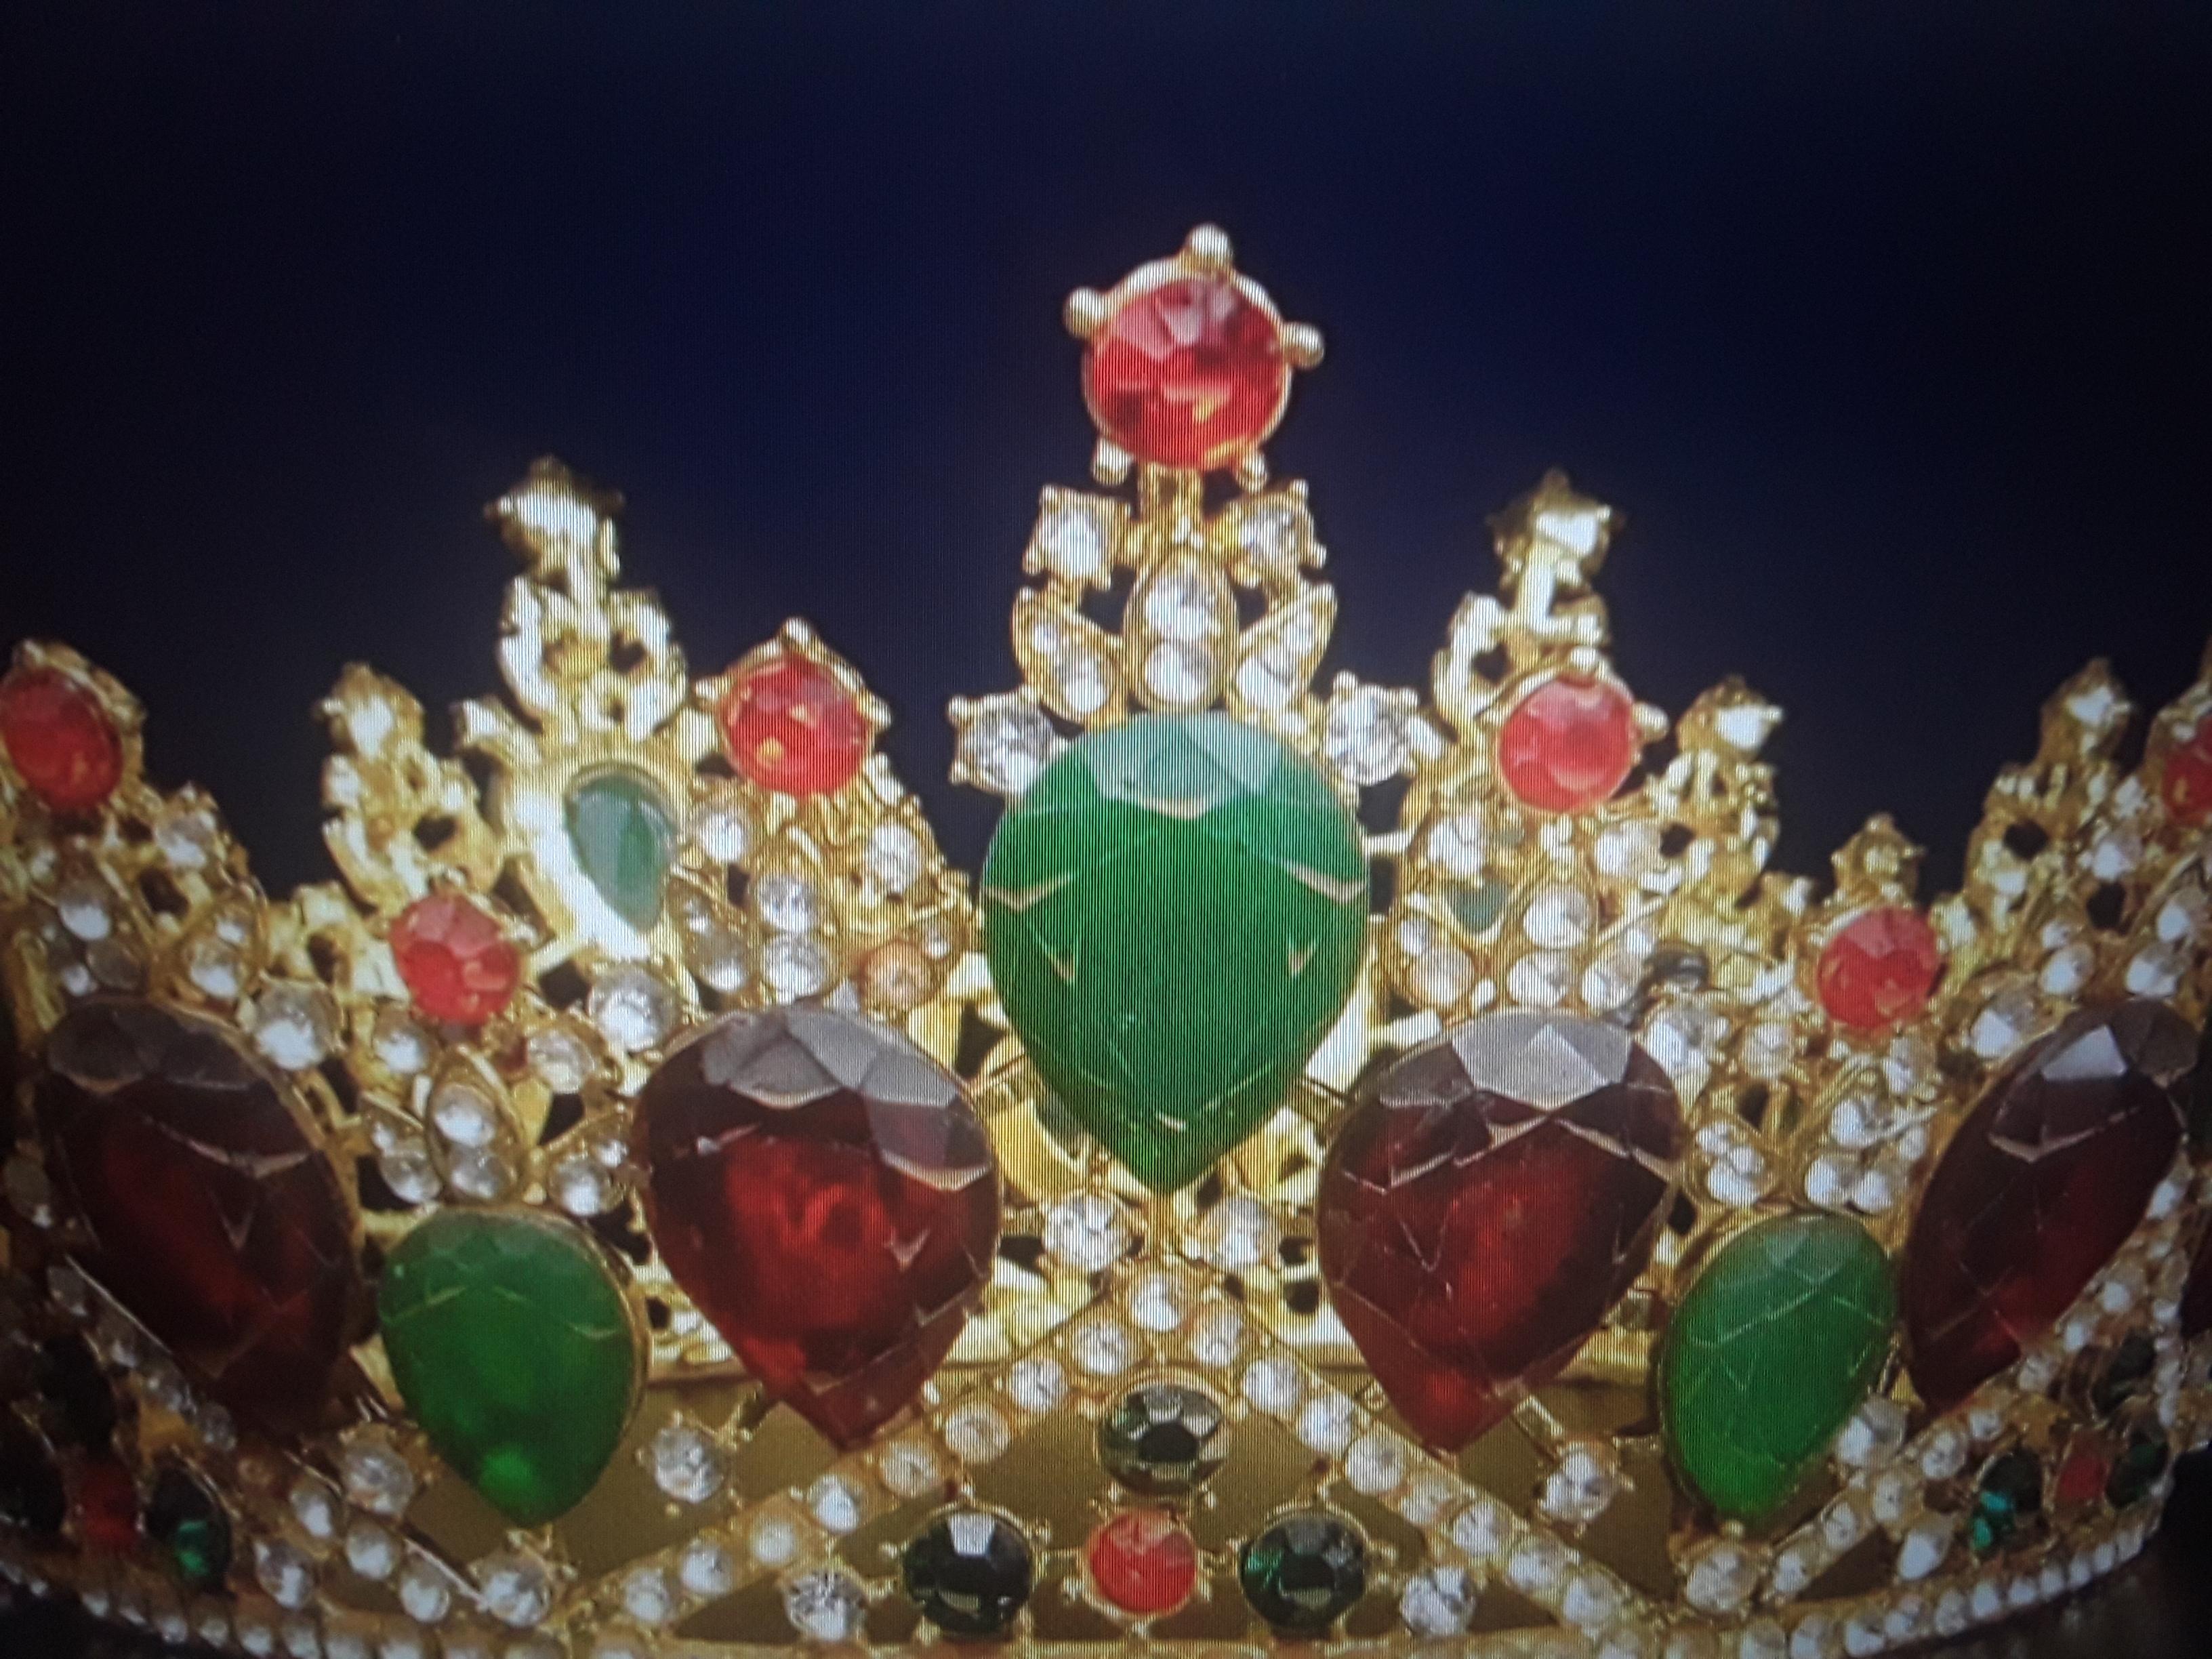 Début du 20ème siècle Tiara royale ancienne en bronze doré rouge avec bijoux verts - Pièce de collection/ Grande-Bretagne